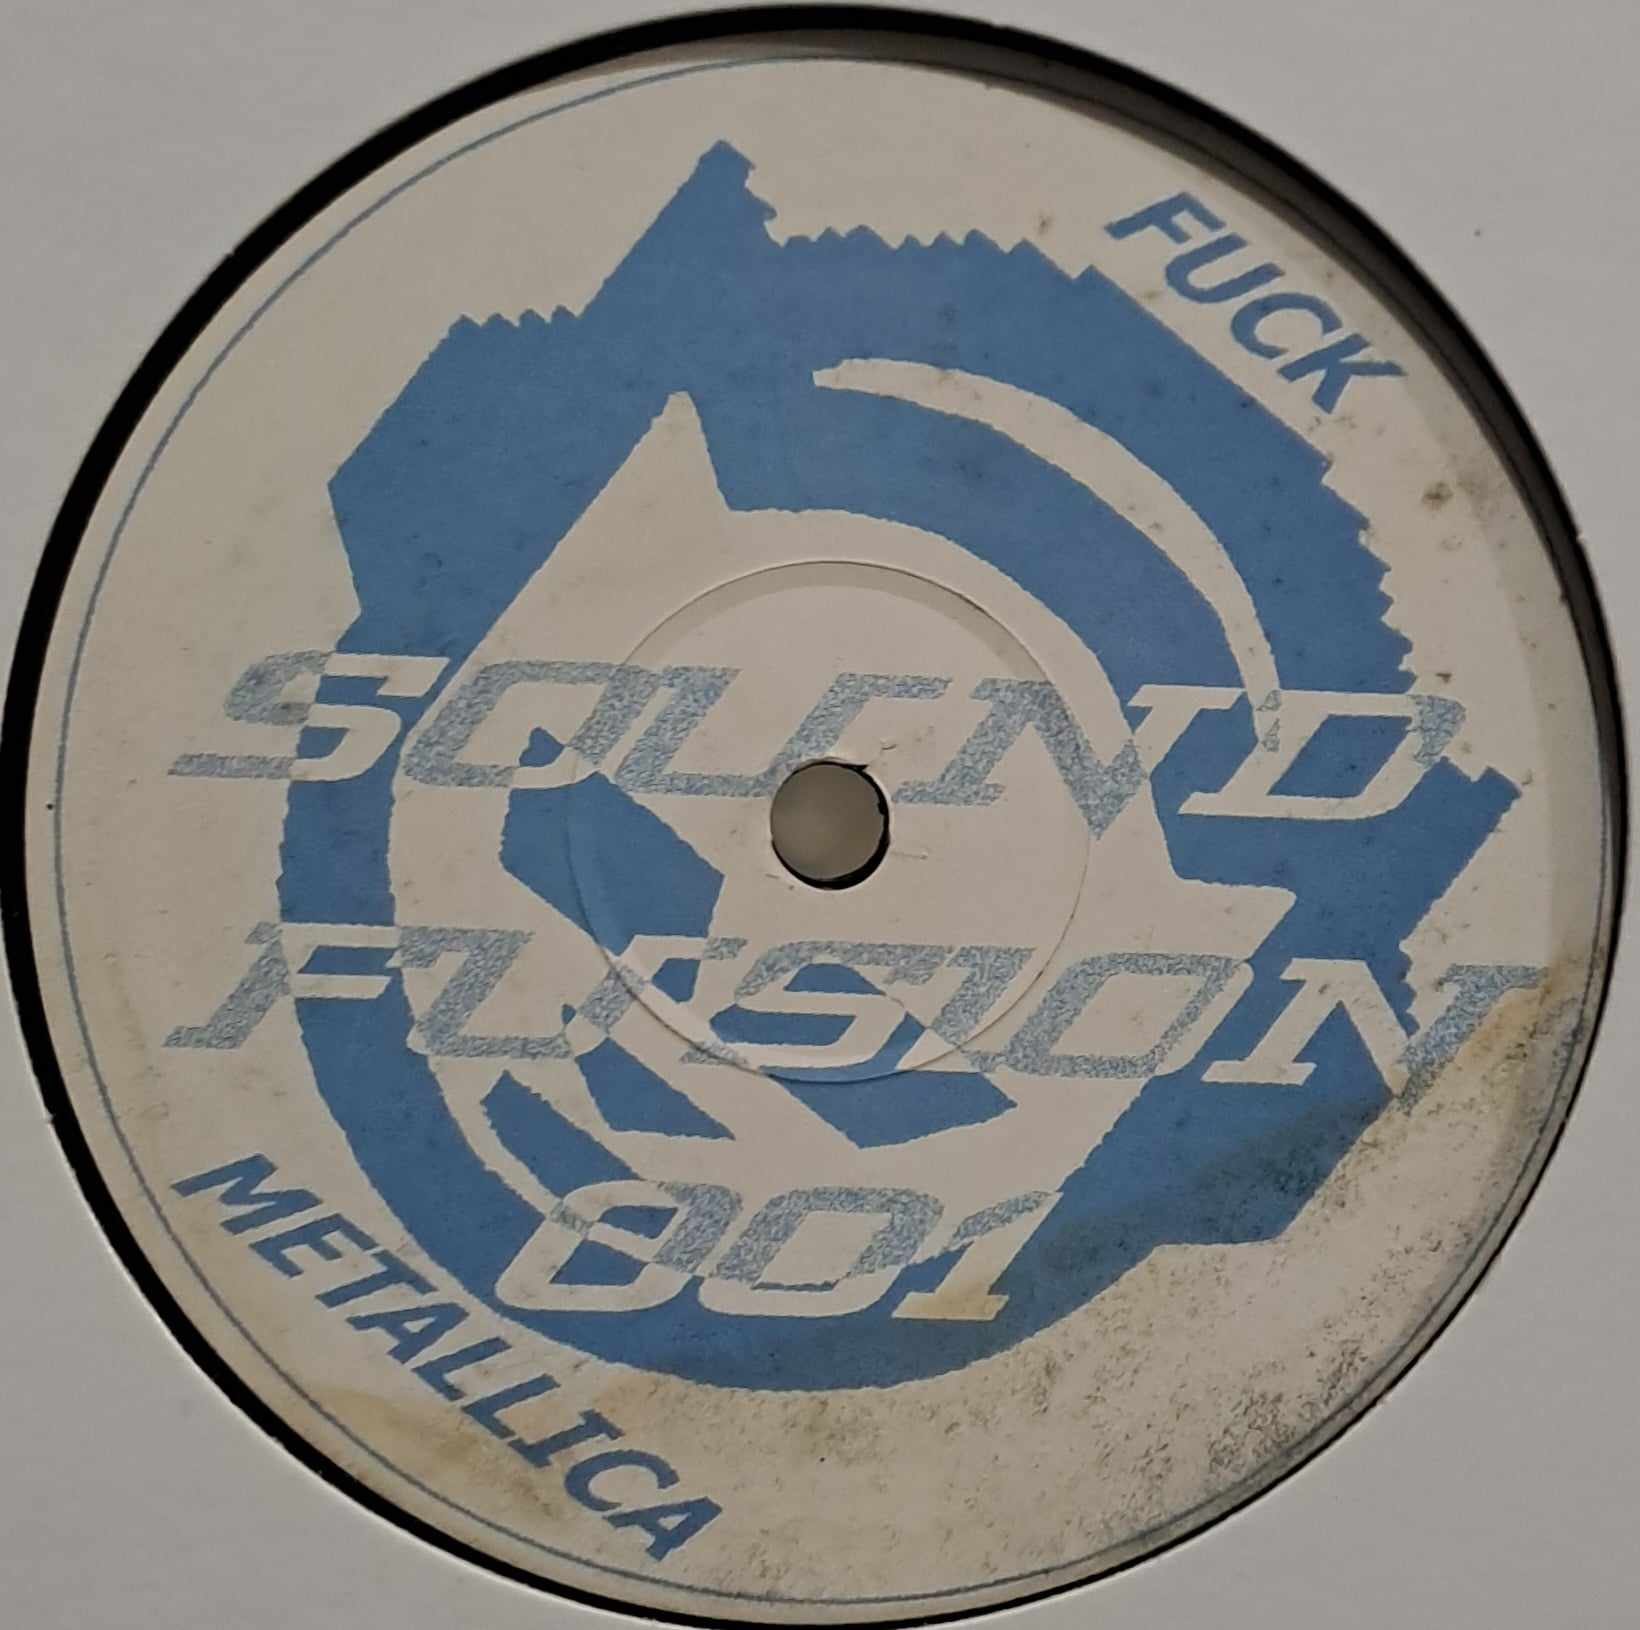 Sound Fusion 001 - vinyle freetekno